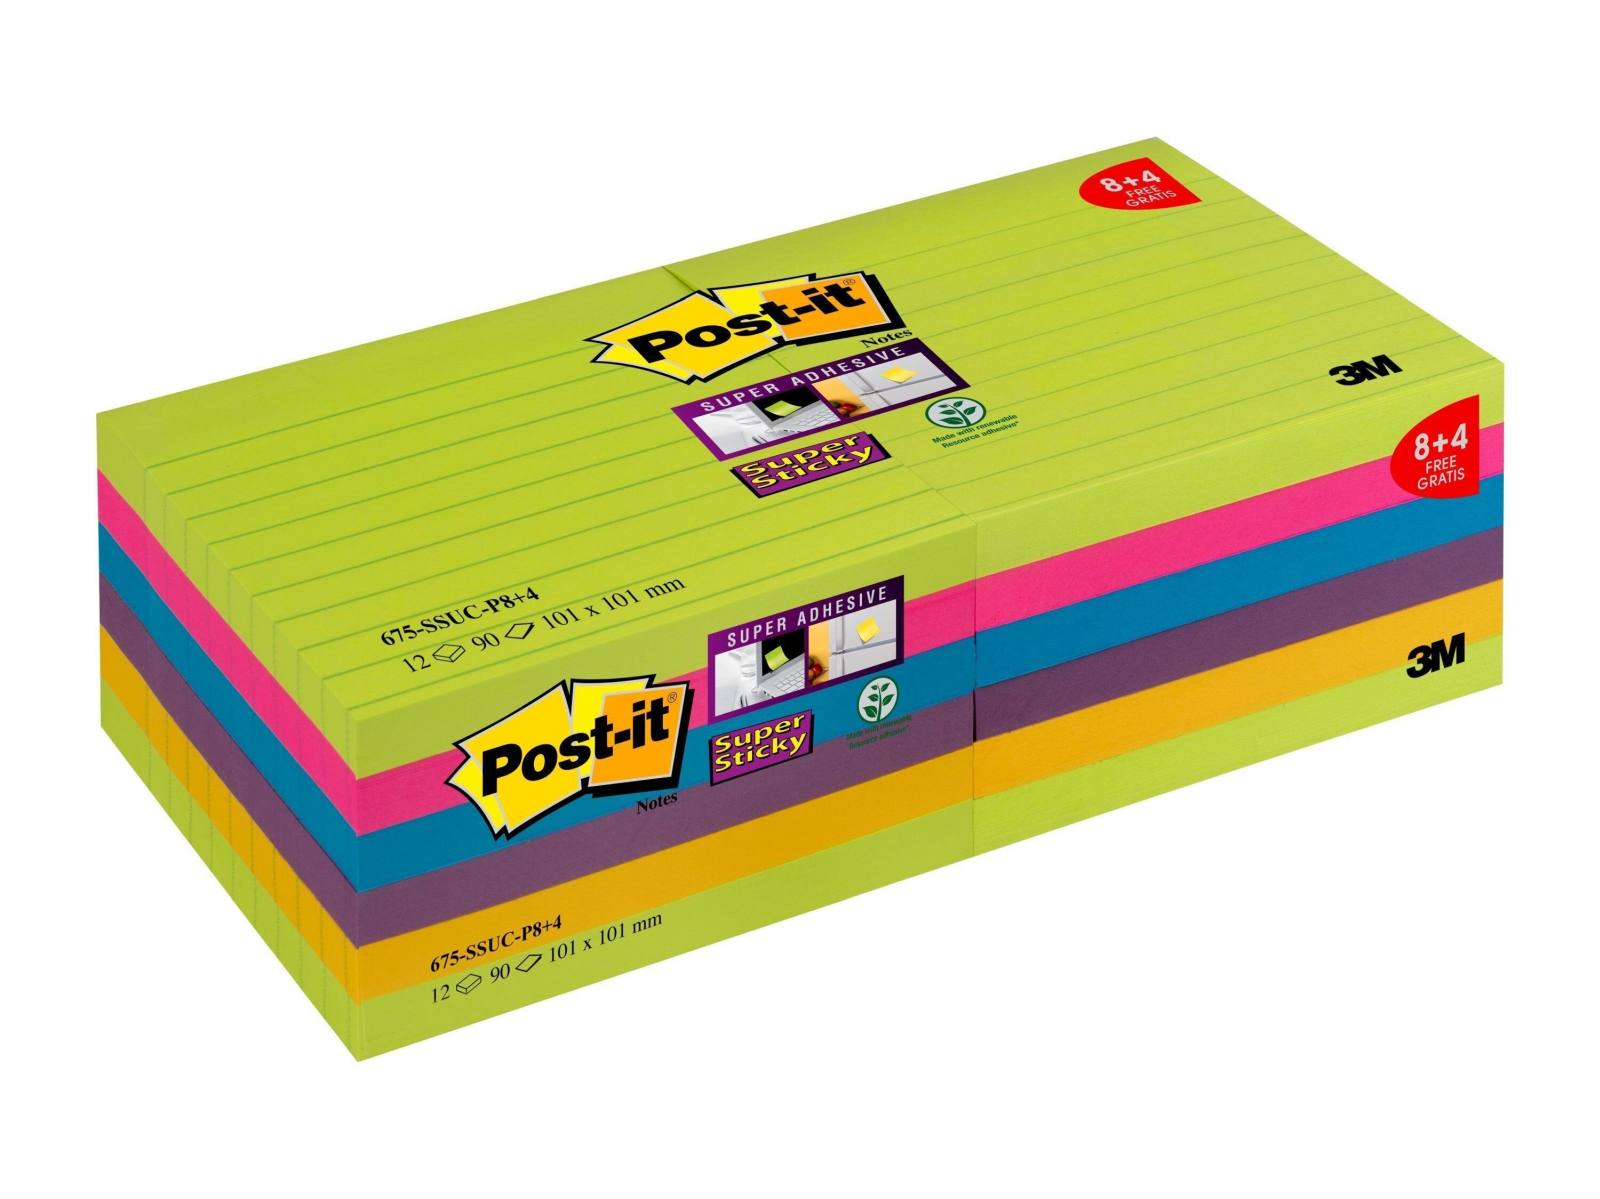 3M Post-it Super Sticky Notes Promotion 4690-SSUC-P4+2 6 blocs de 90 feuilles à prix avantageux, vert fluo, ultra rose, -jaune, -bleu, orange fluo, 101 mm x 152 mm, ligné, certifié PEFC